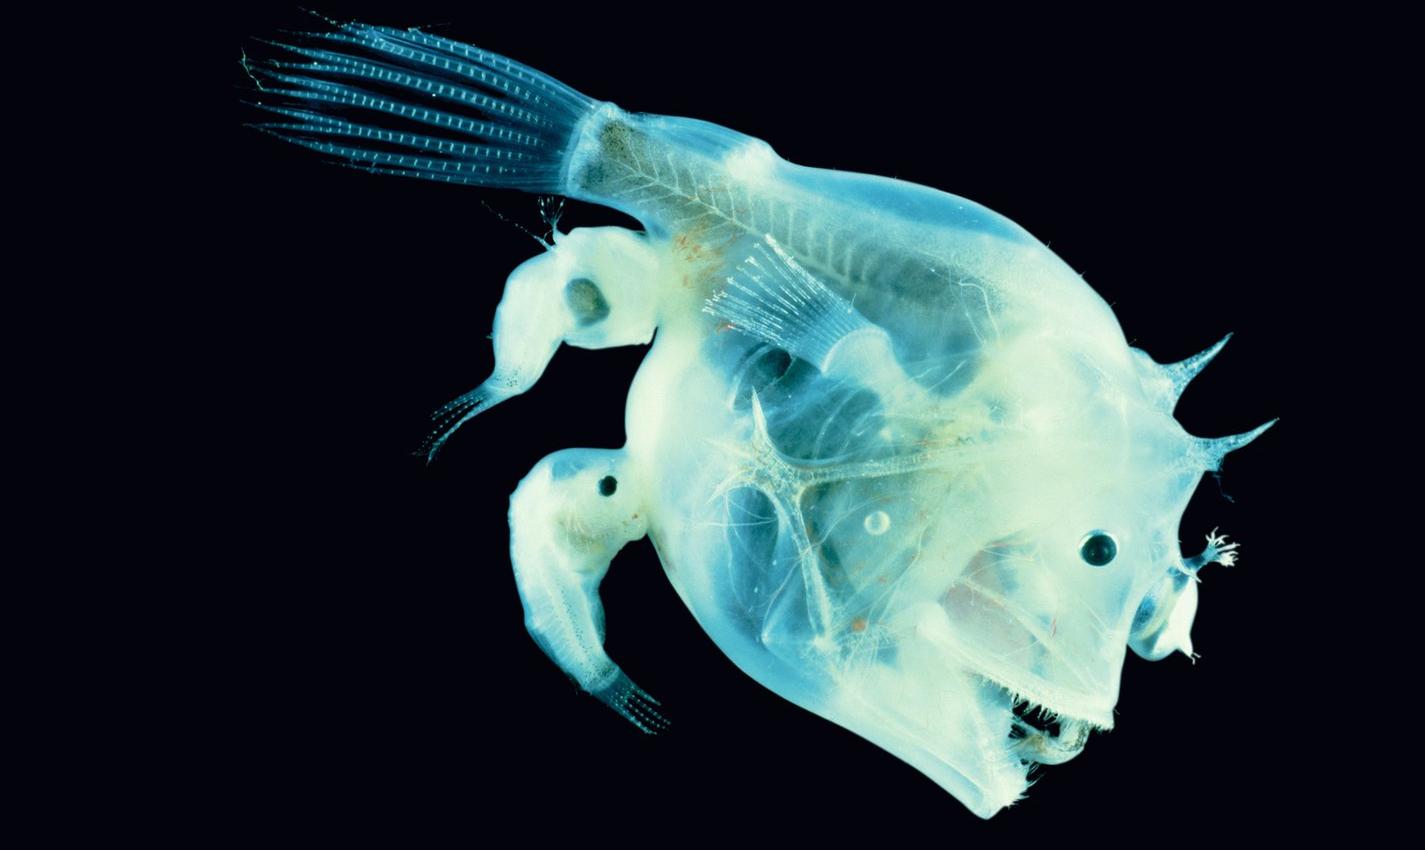 Слияние самца рыбы-удильщика с телом самки обеспечивает отсутствие нормального иммунитета